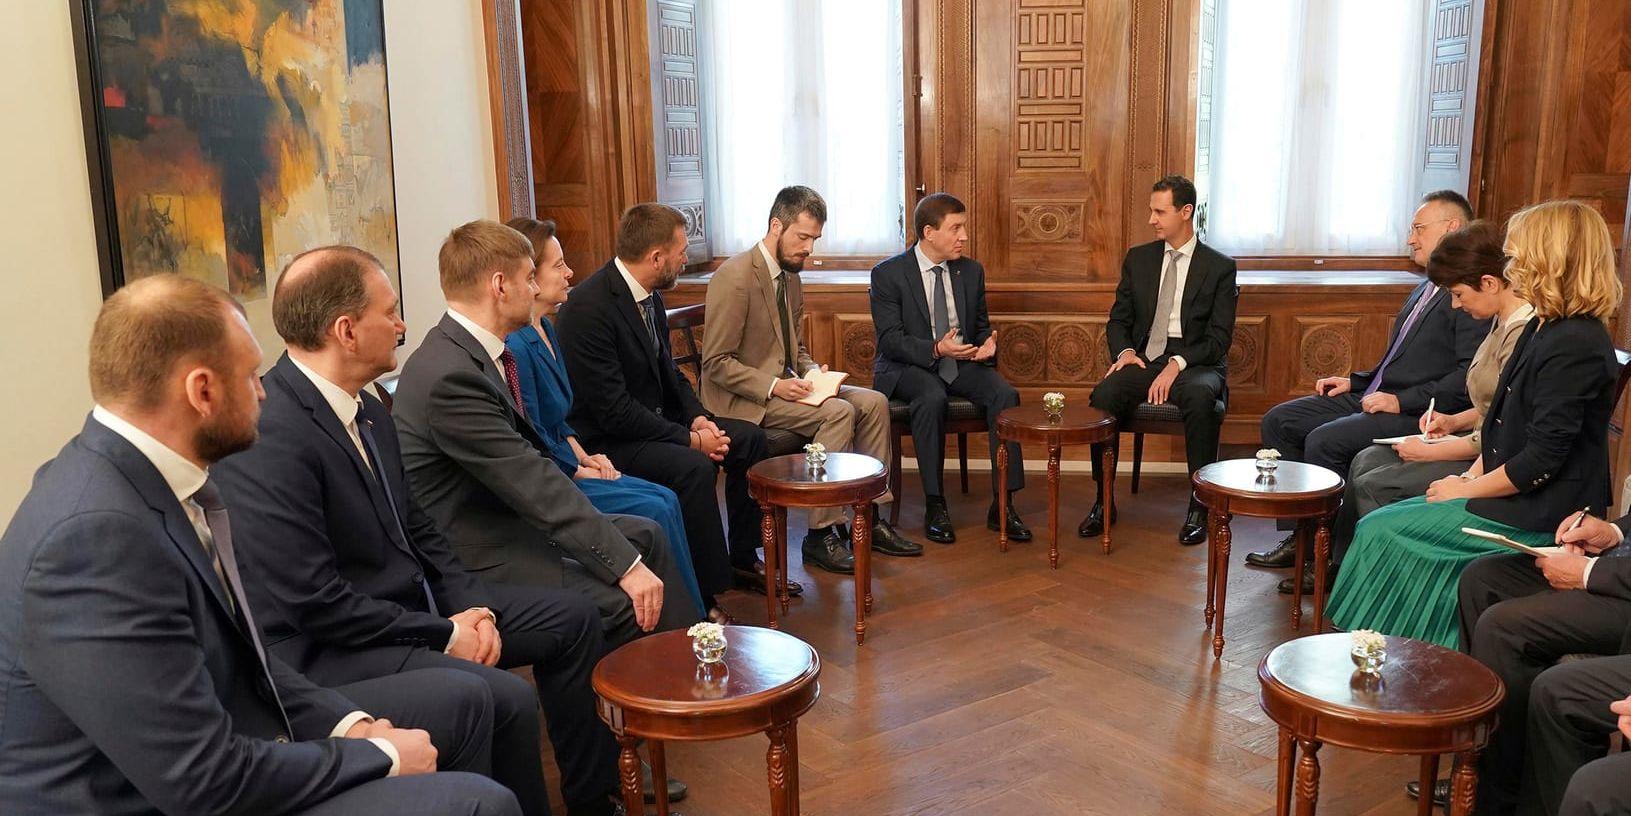 Syriens president Bashar al-Assad (längts bort i bild till höger) träffar ryska parlamentariker i Damaskus.